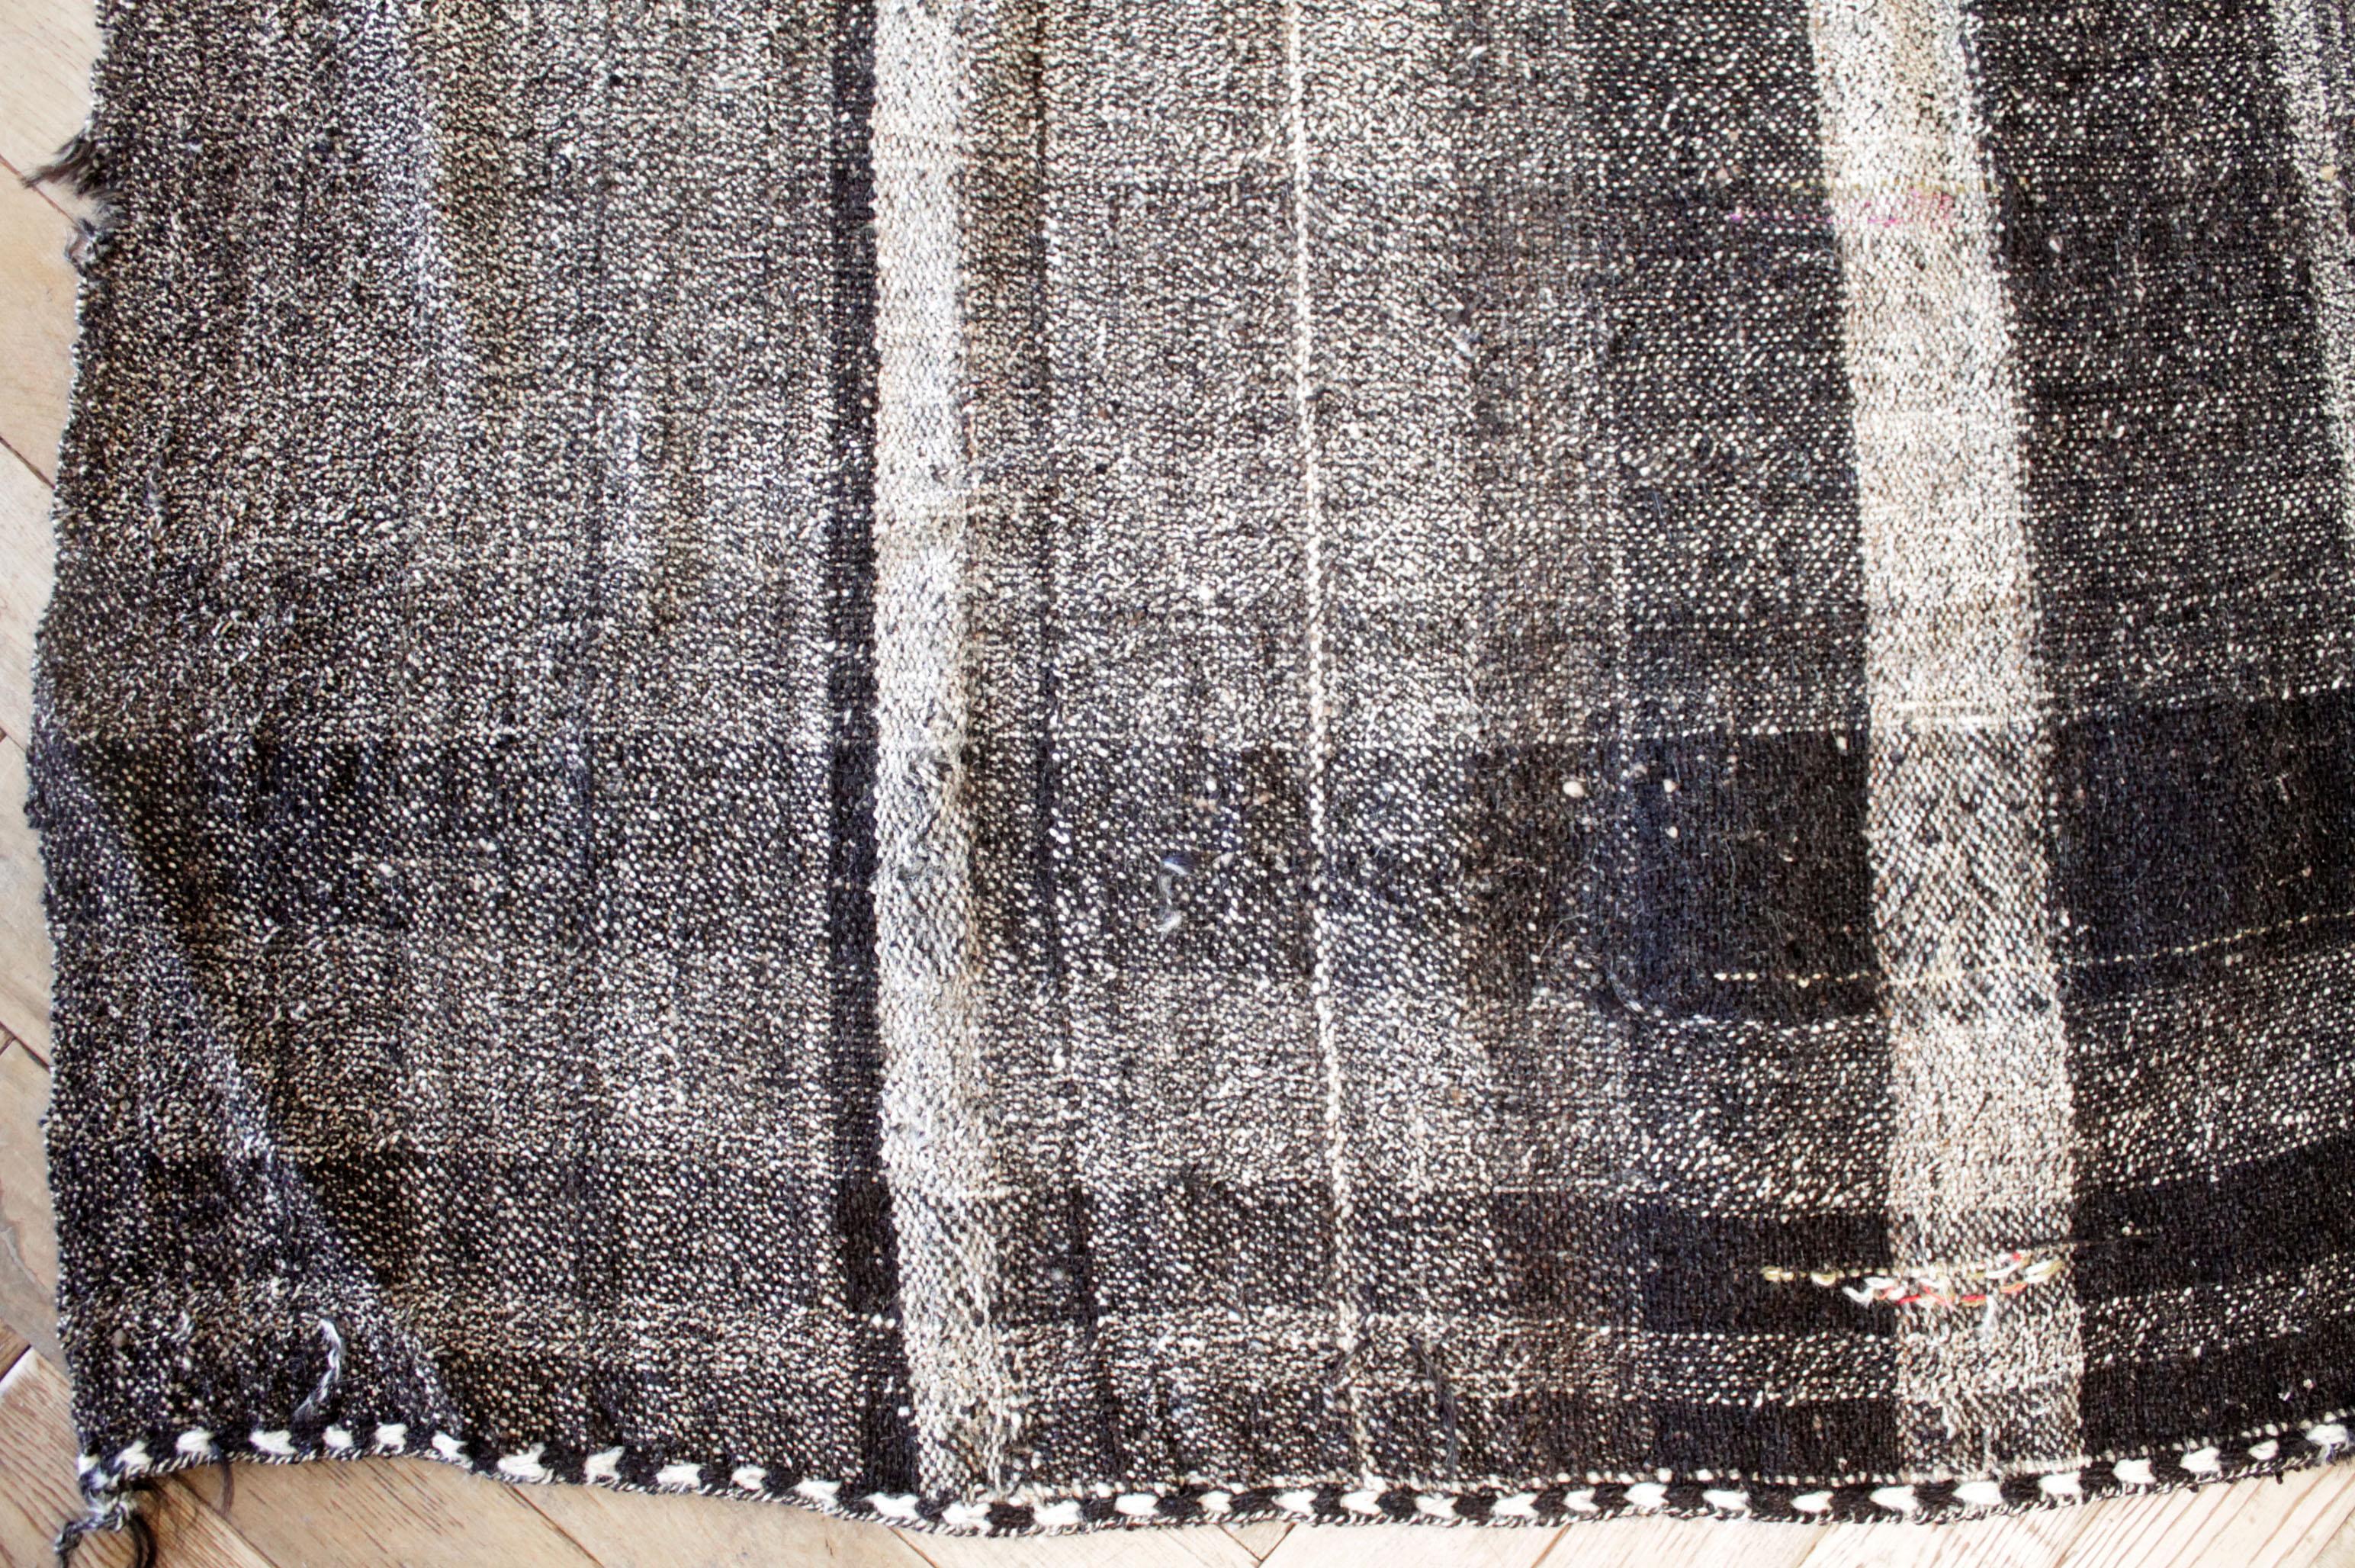 Anna-Teppich
Türkischer Vintage-Teppich in Braun mit weißer Webart und cremeweißen Streifen, mit dunkelbraunen Streifen. Flachgewebe, Wolle und Ziegenhaar machen sie extrem haltbar und eignen sich hervorragend für stark frequentierte Bereiche.